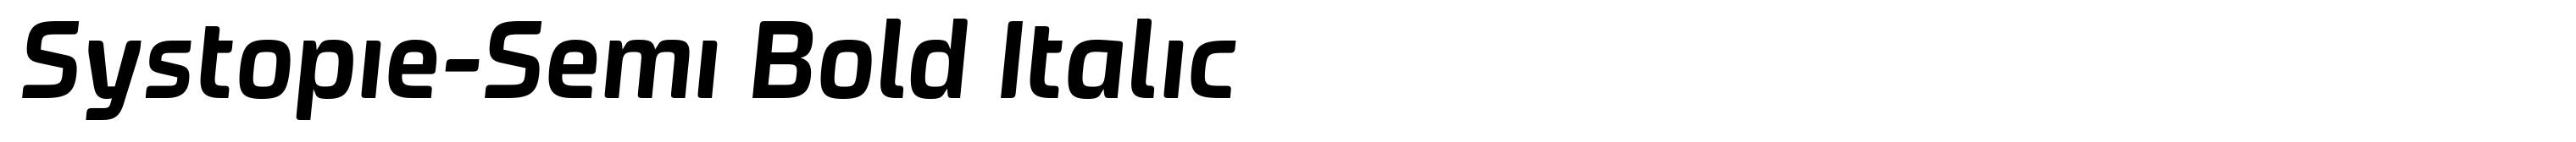 Systopie-Semi Bold Italic